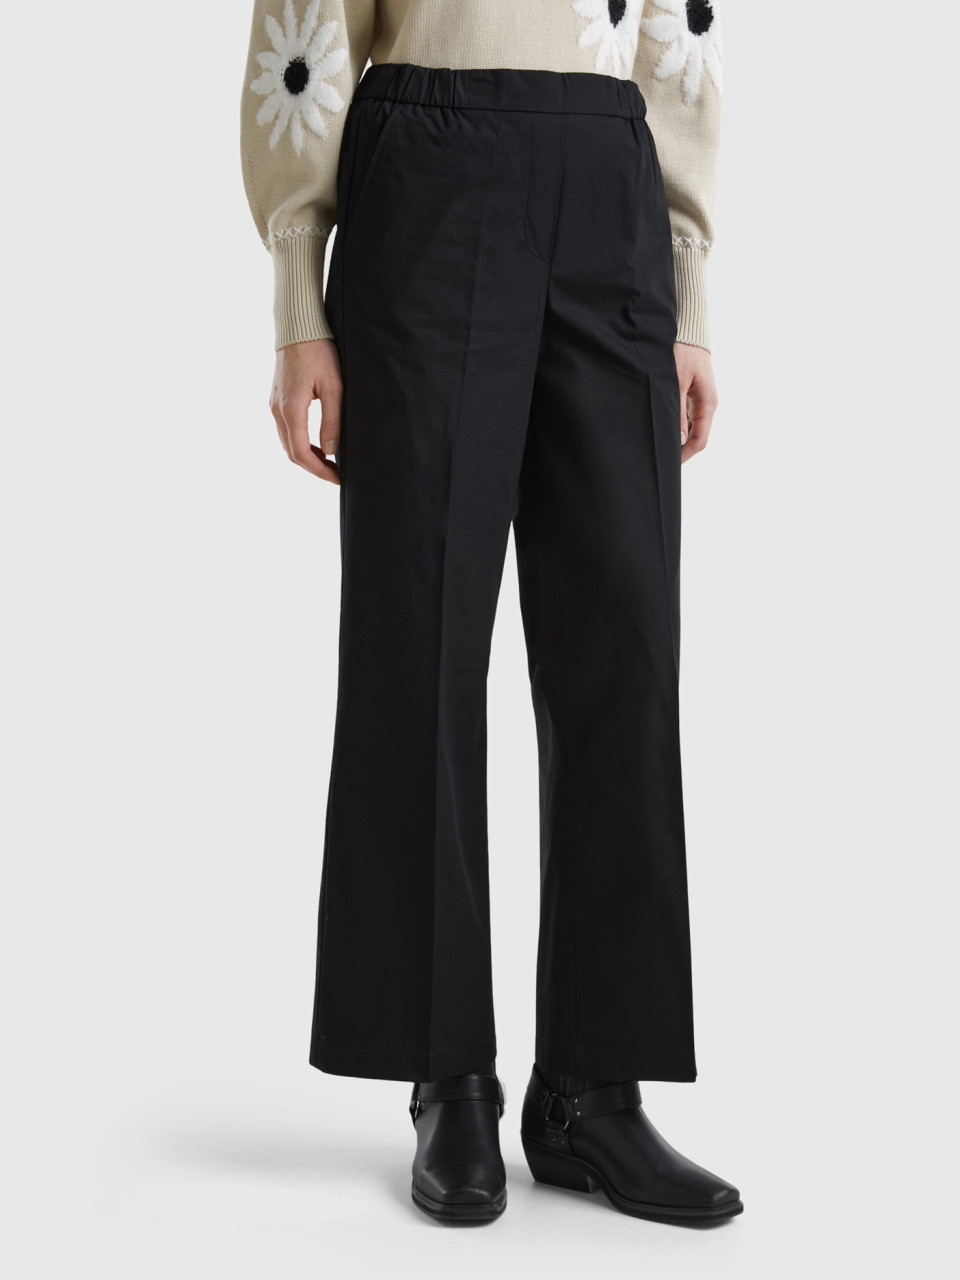 Benetton, Pantalón Con Elástico En La Cintura, Negro, Mujer